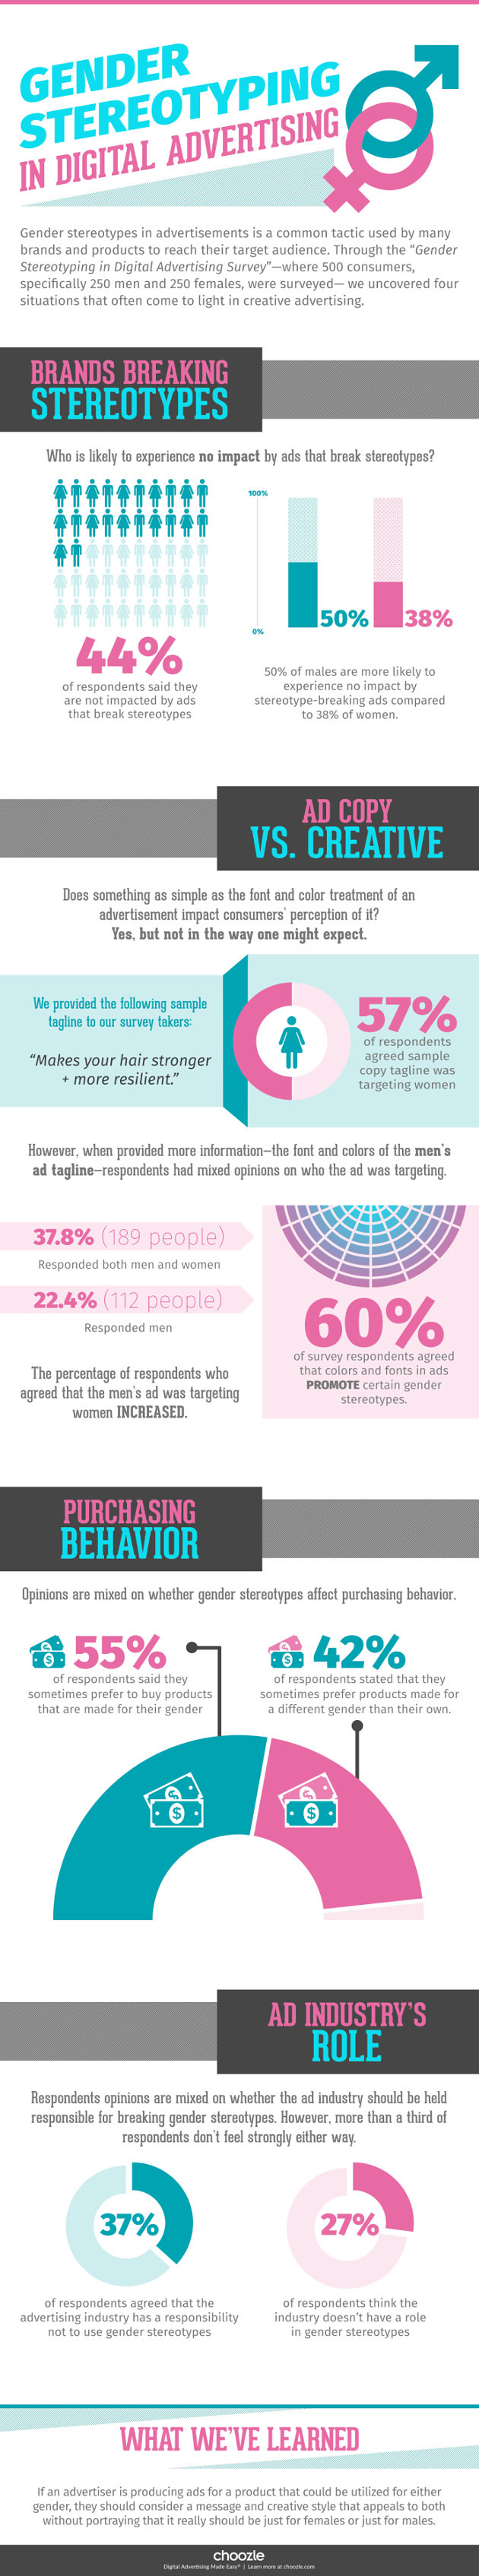 Gender Stereotyping in Digital Advertising